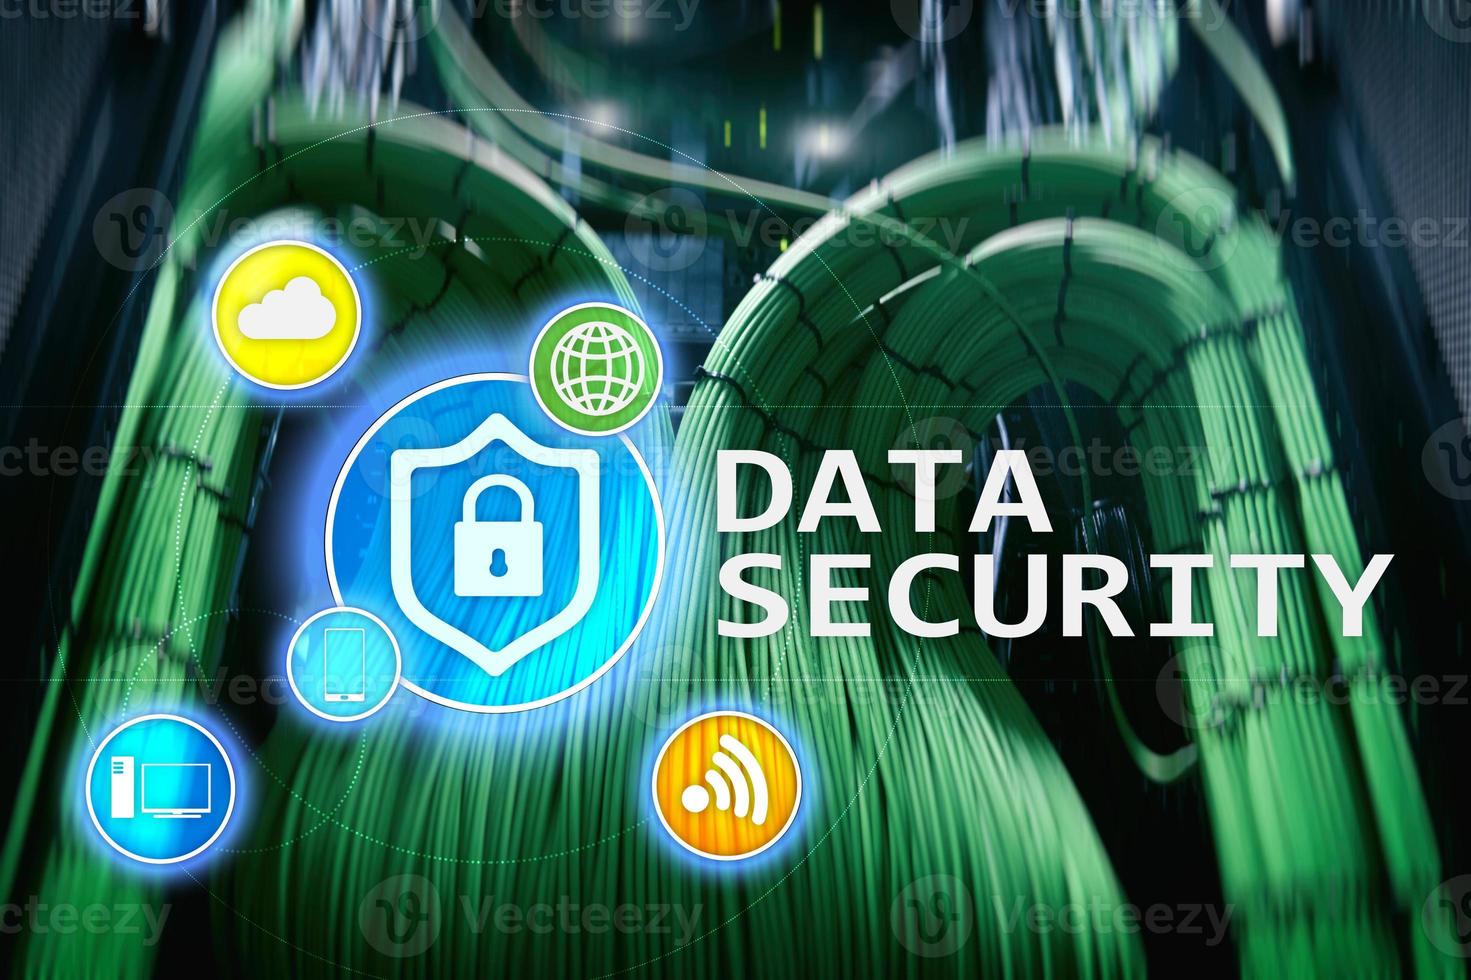 segurança de dados, prevenção de crimes cibernéticos, proteção de informações digitais. ícones de bloqueio e fundo da sala do servidor. foto